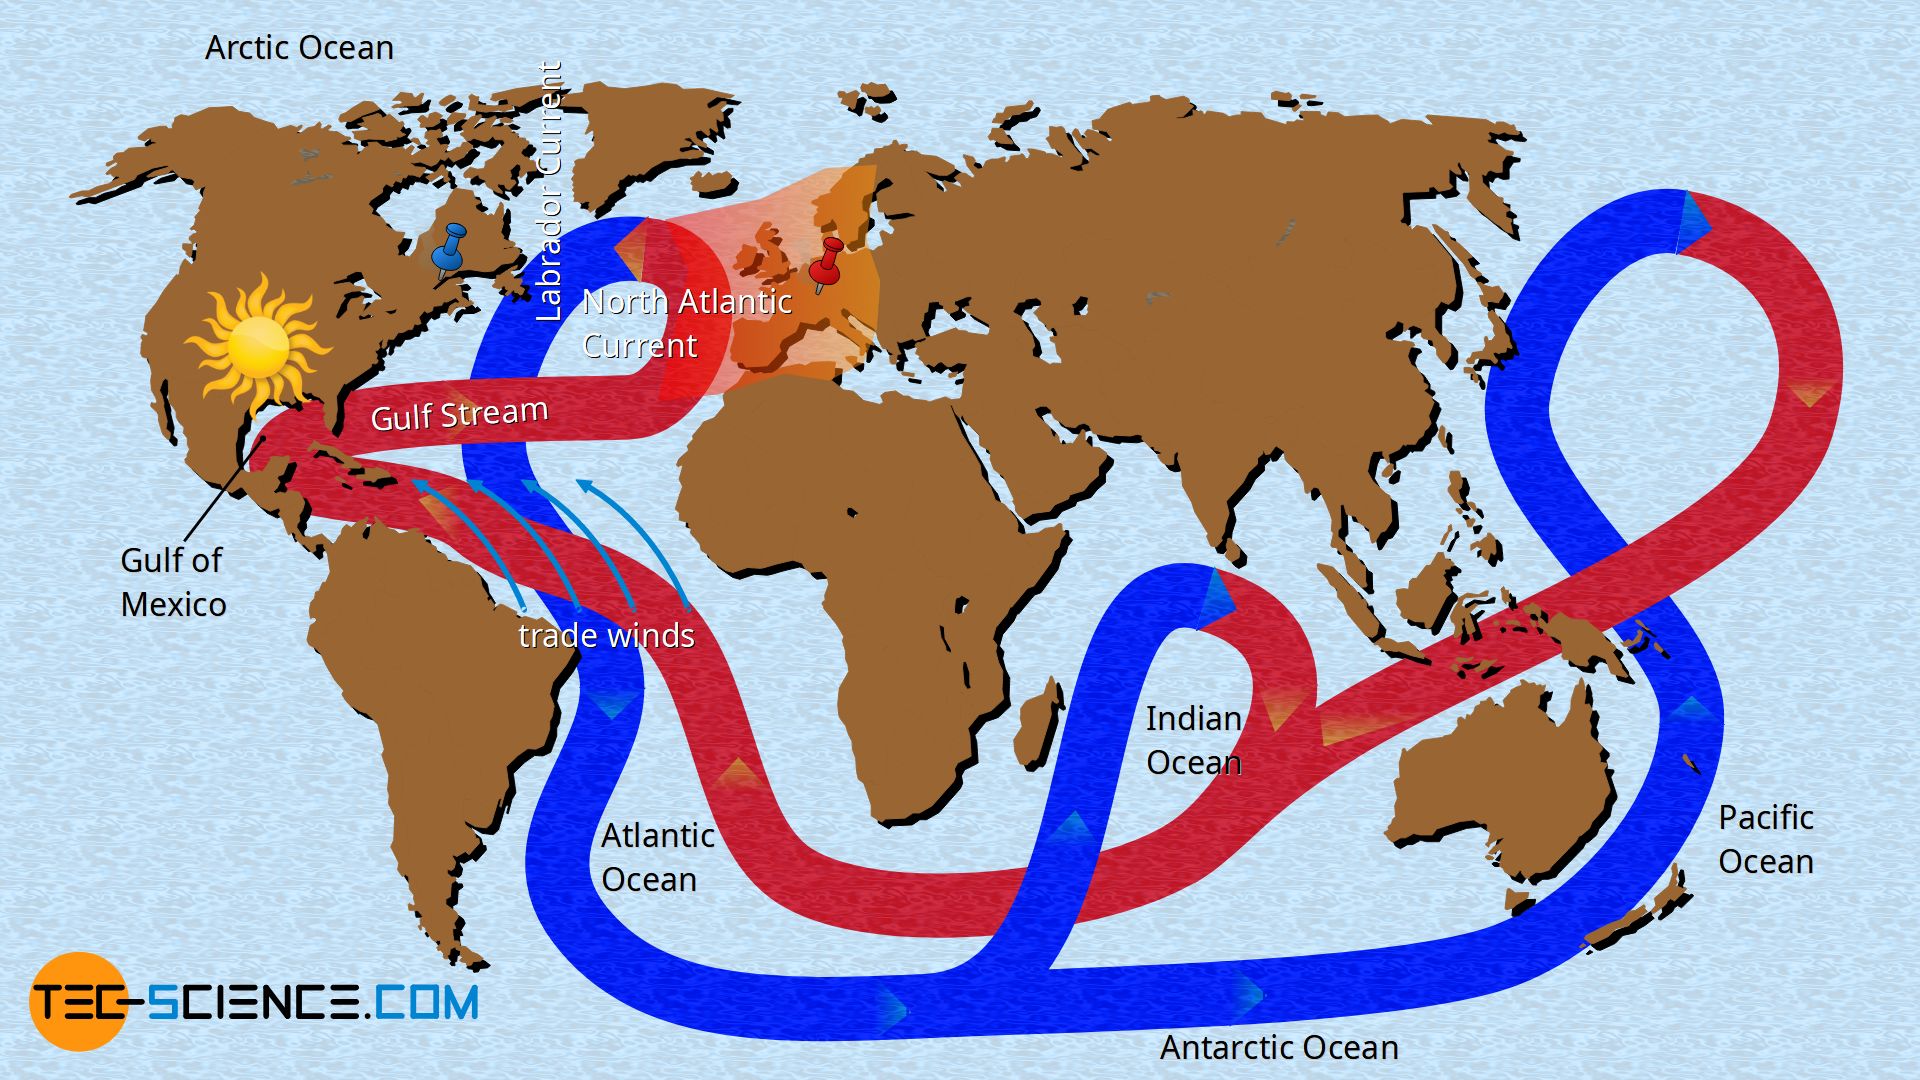 Global ocean conveyor belt (Gulf Stream)